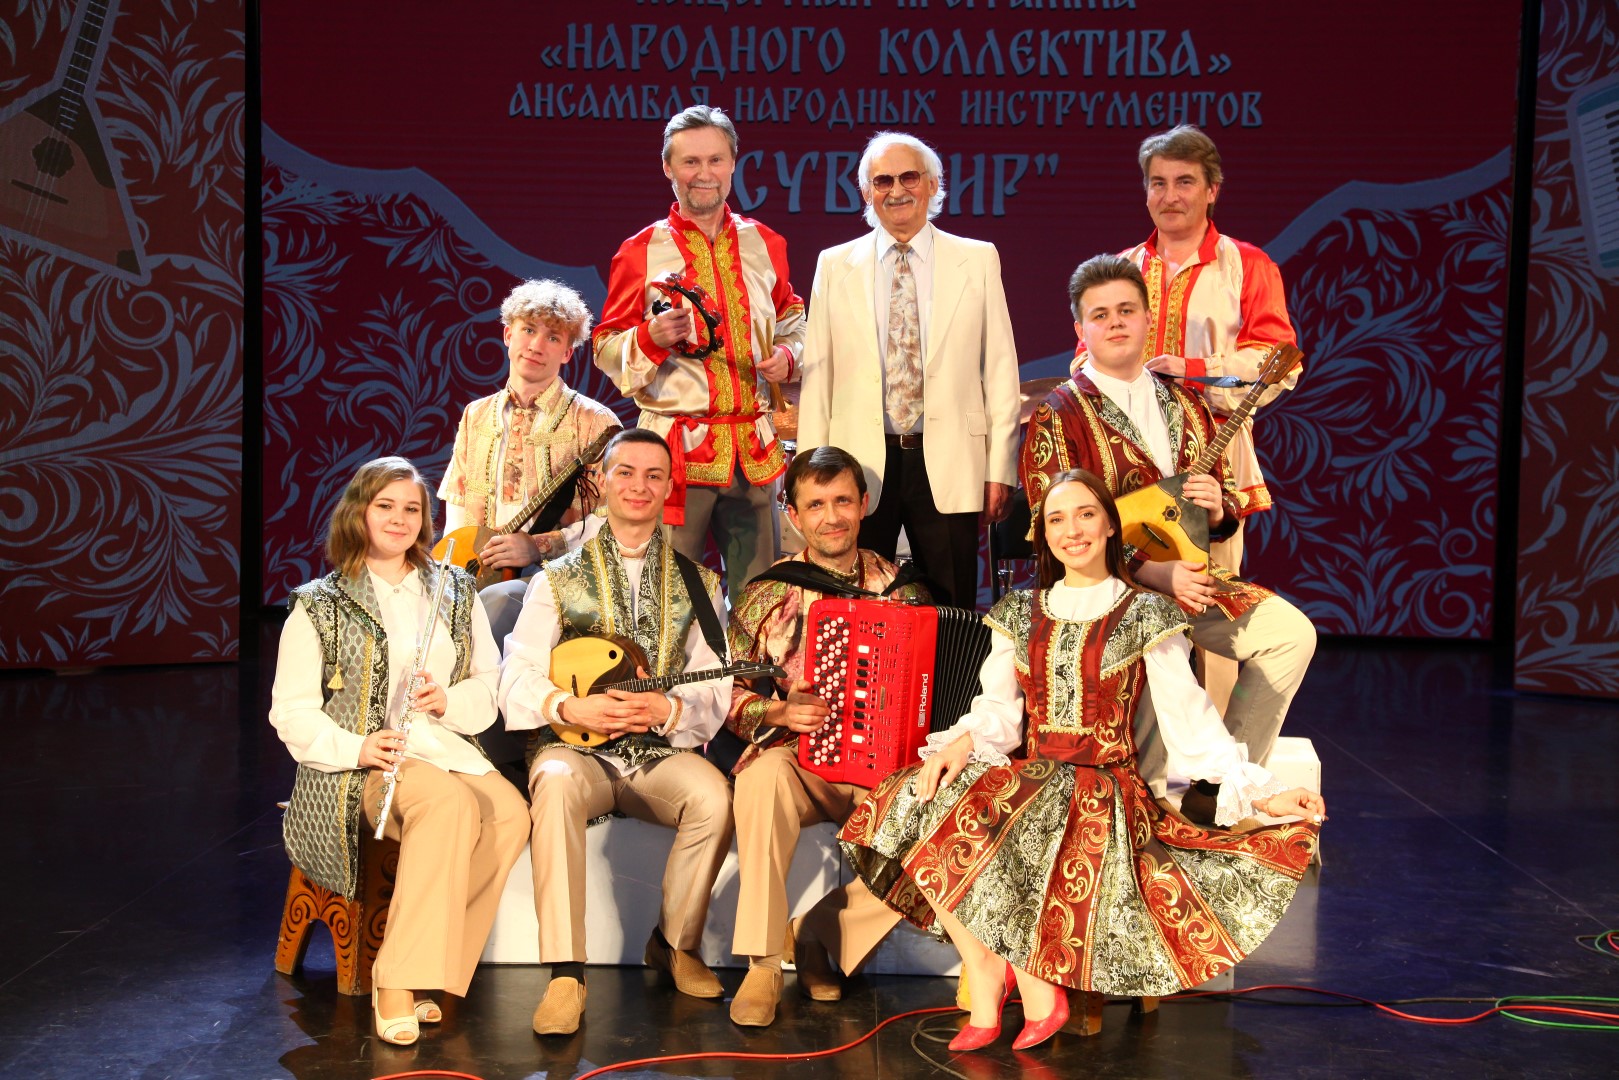 Отчетный концерт «Народного коллектива» ансамбля народных инструментов «Сувенир»